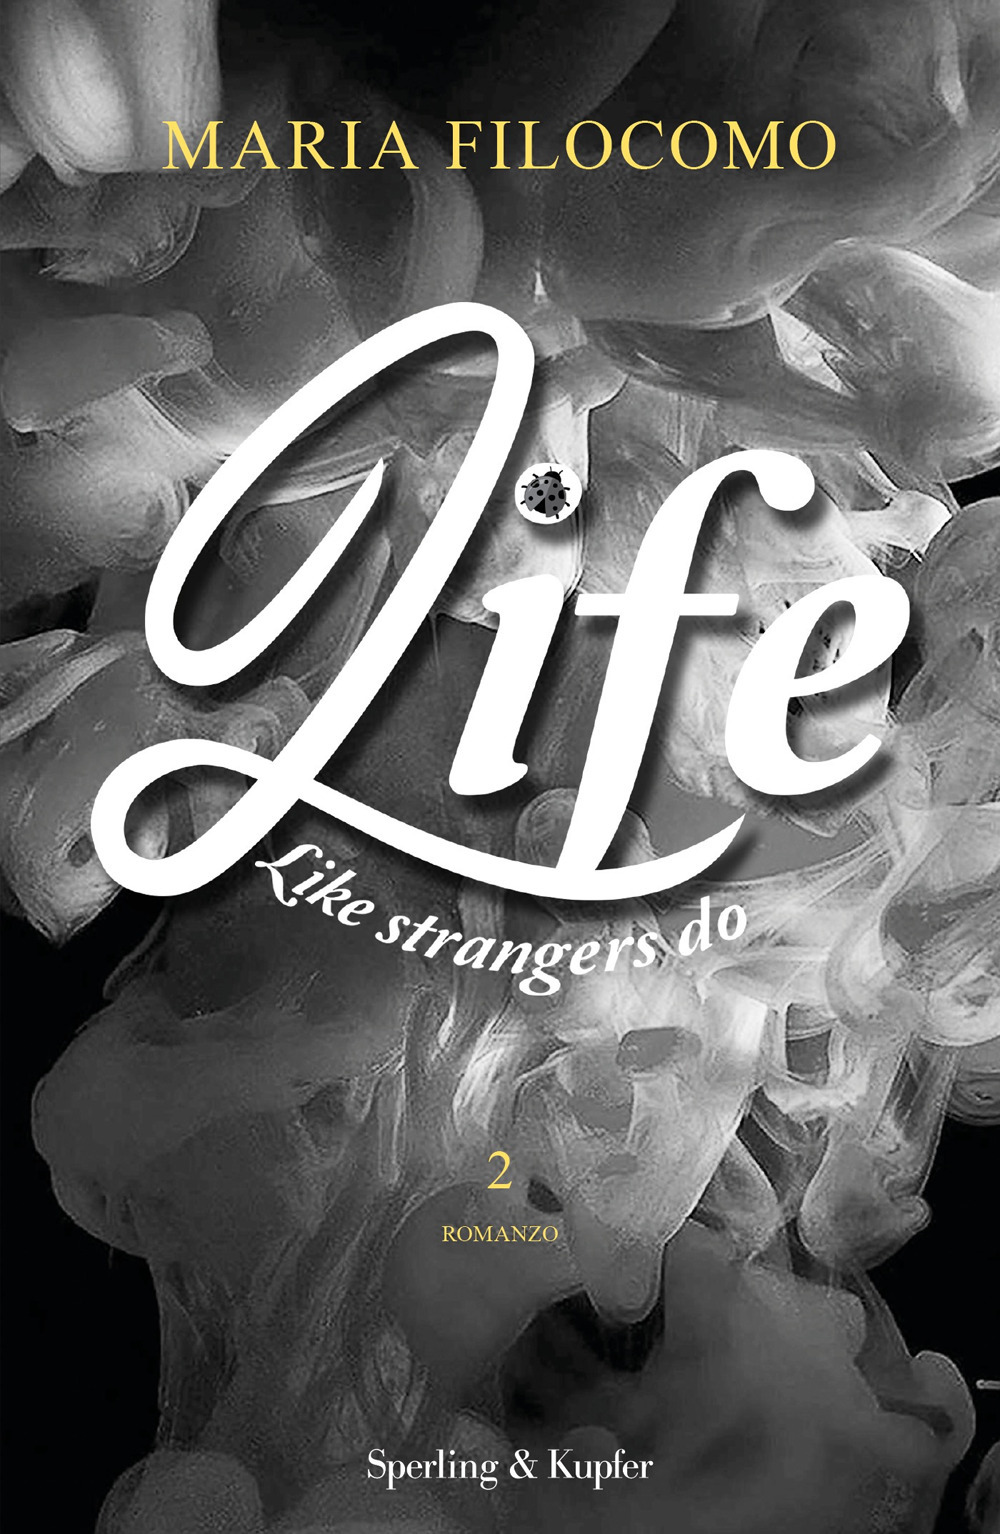 Like strangers do. Life. Vol. 2